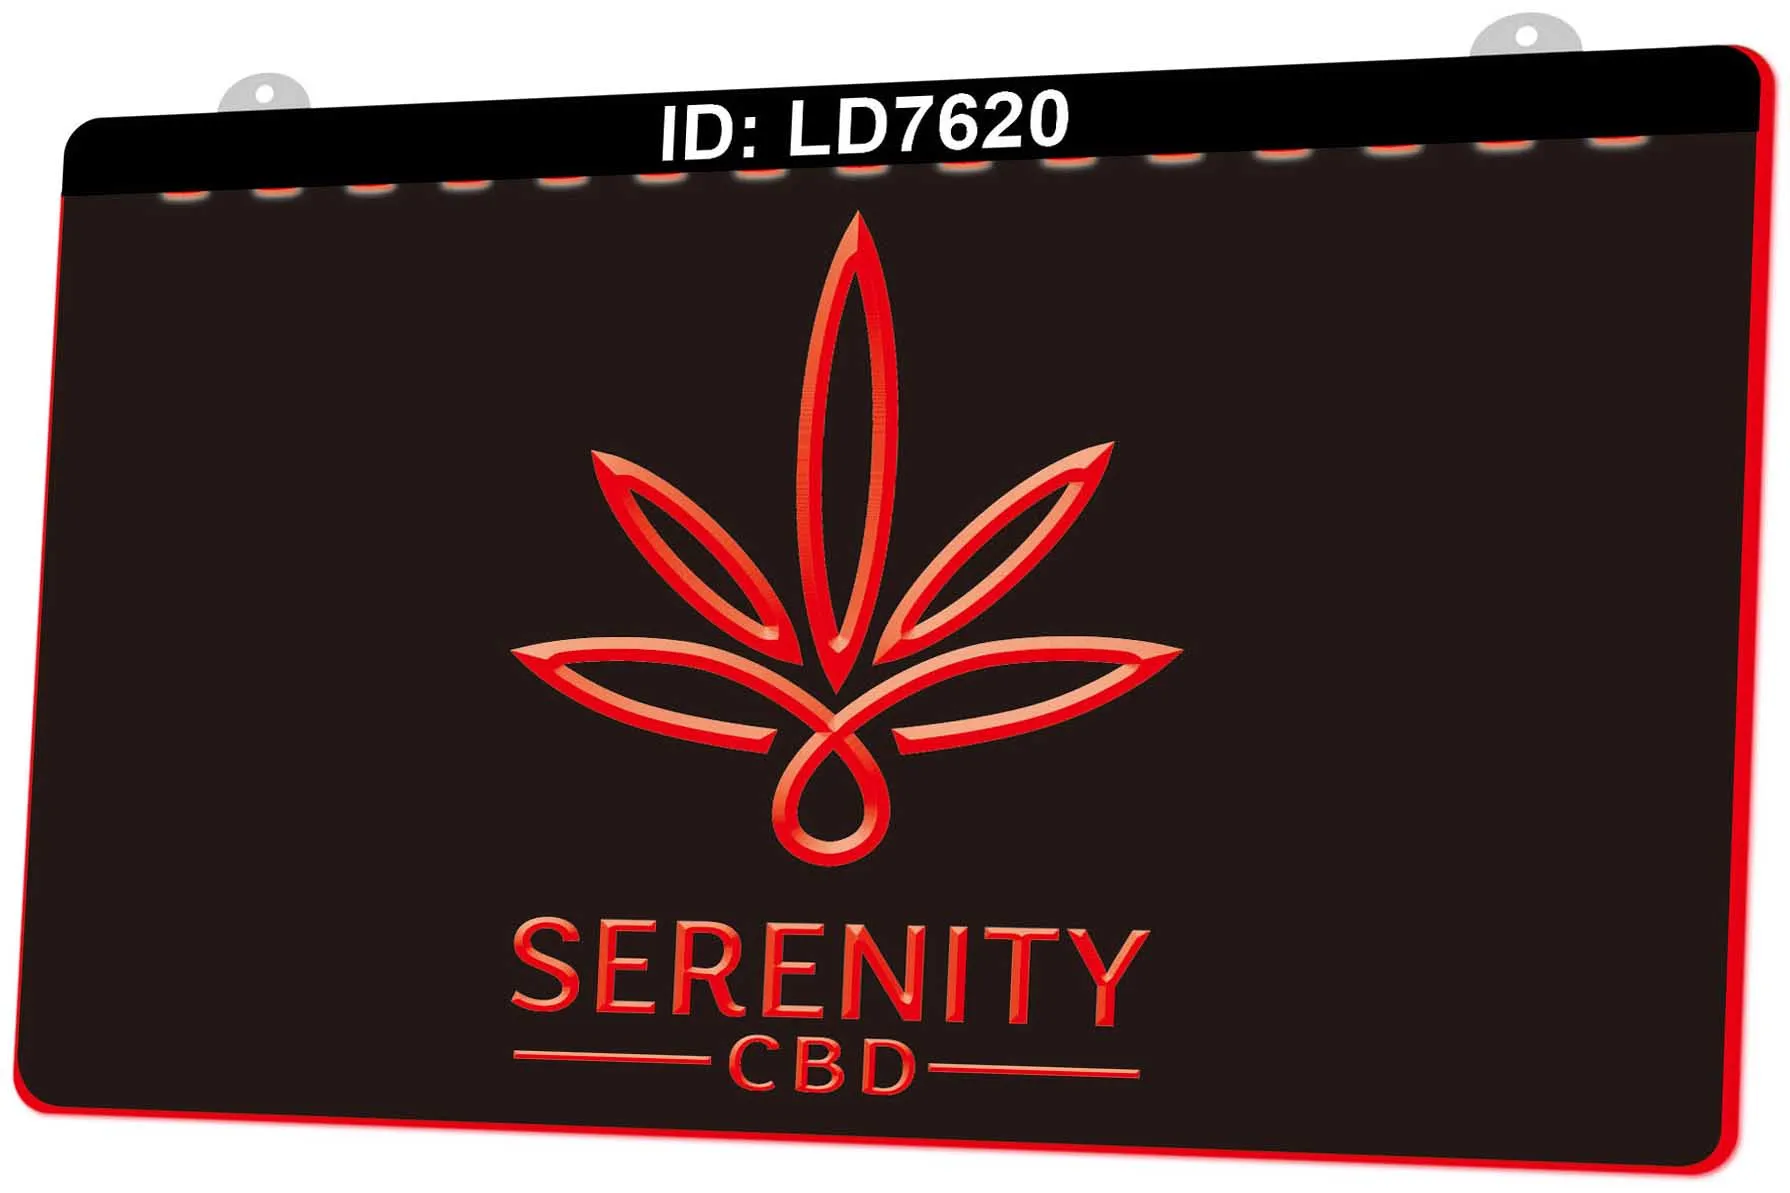 LD7620 Serenity CBD Olio CBD 3D Incisione LED Segno Light Segno all'ingrosso